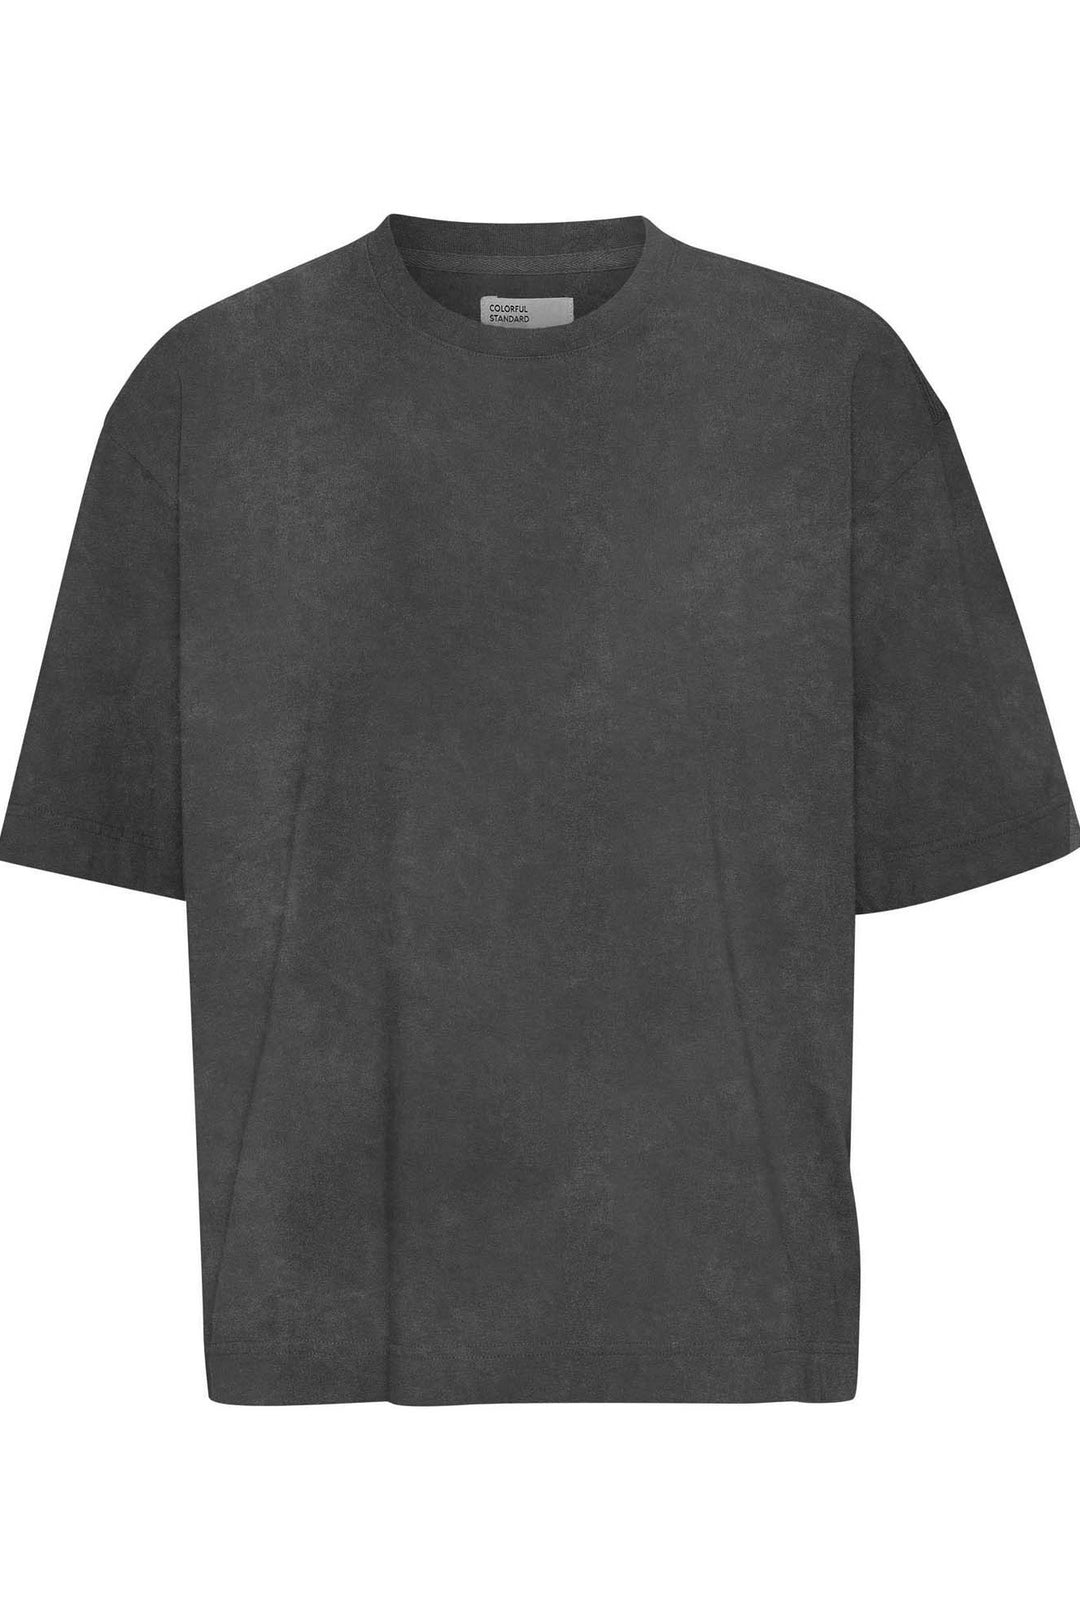 Oversize T-Shirt mit weiter Passform in fast schwarz. Aus Biobaumwolle von Colorful Standard. CS2056 faded black